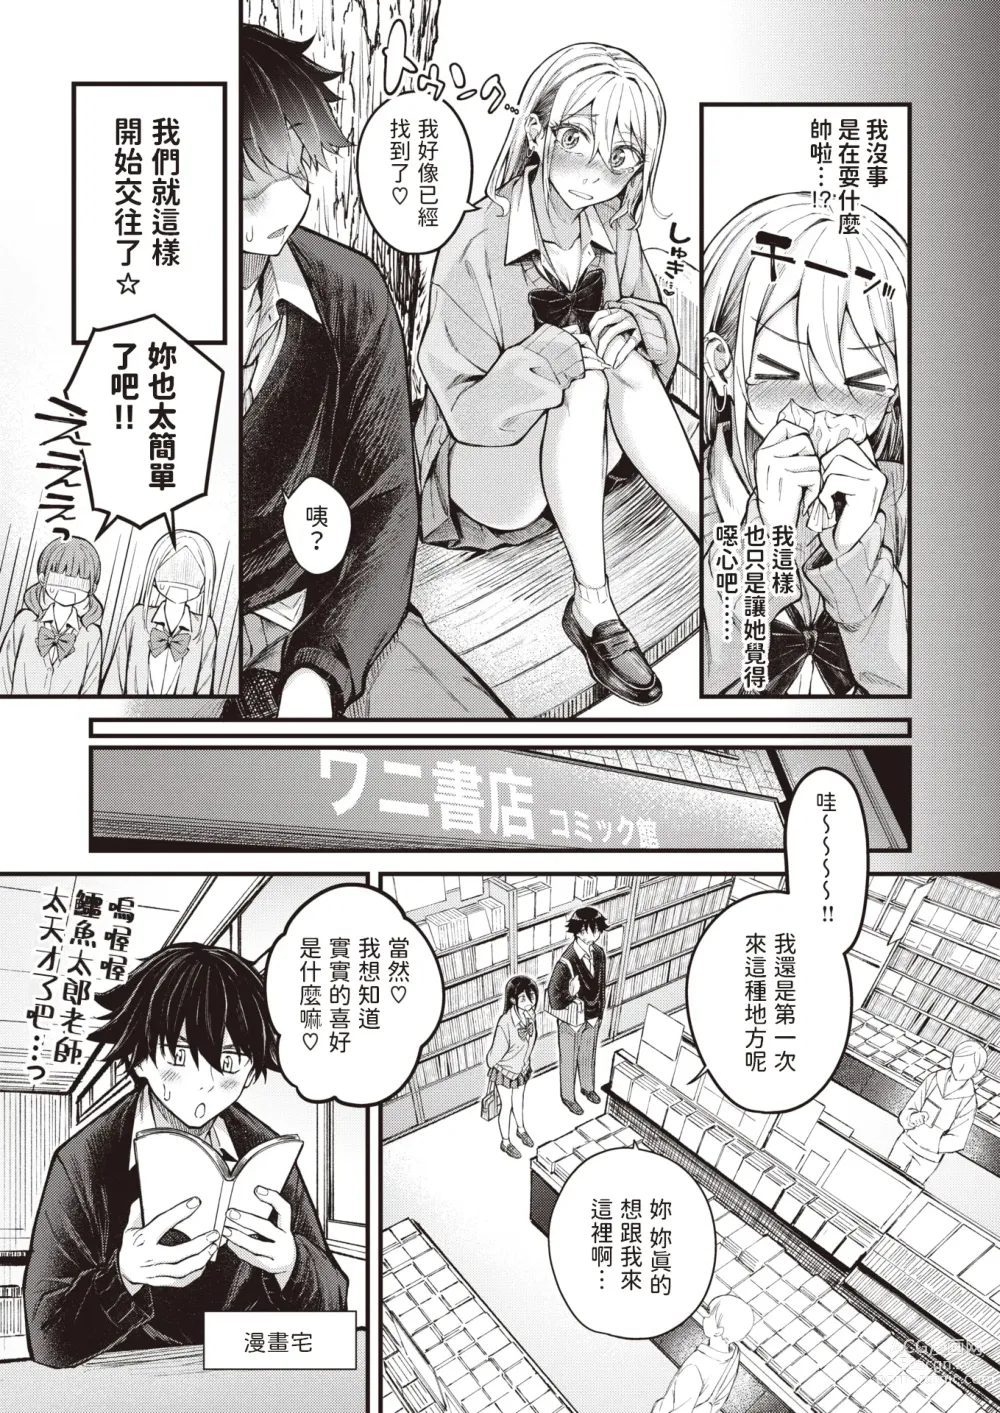 Page 5 of manga Arinomama no Kimi de Ite